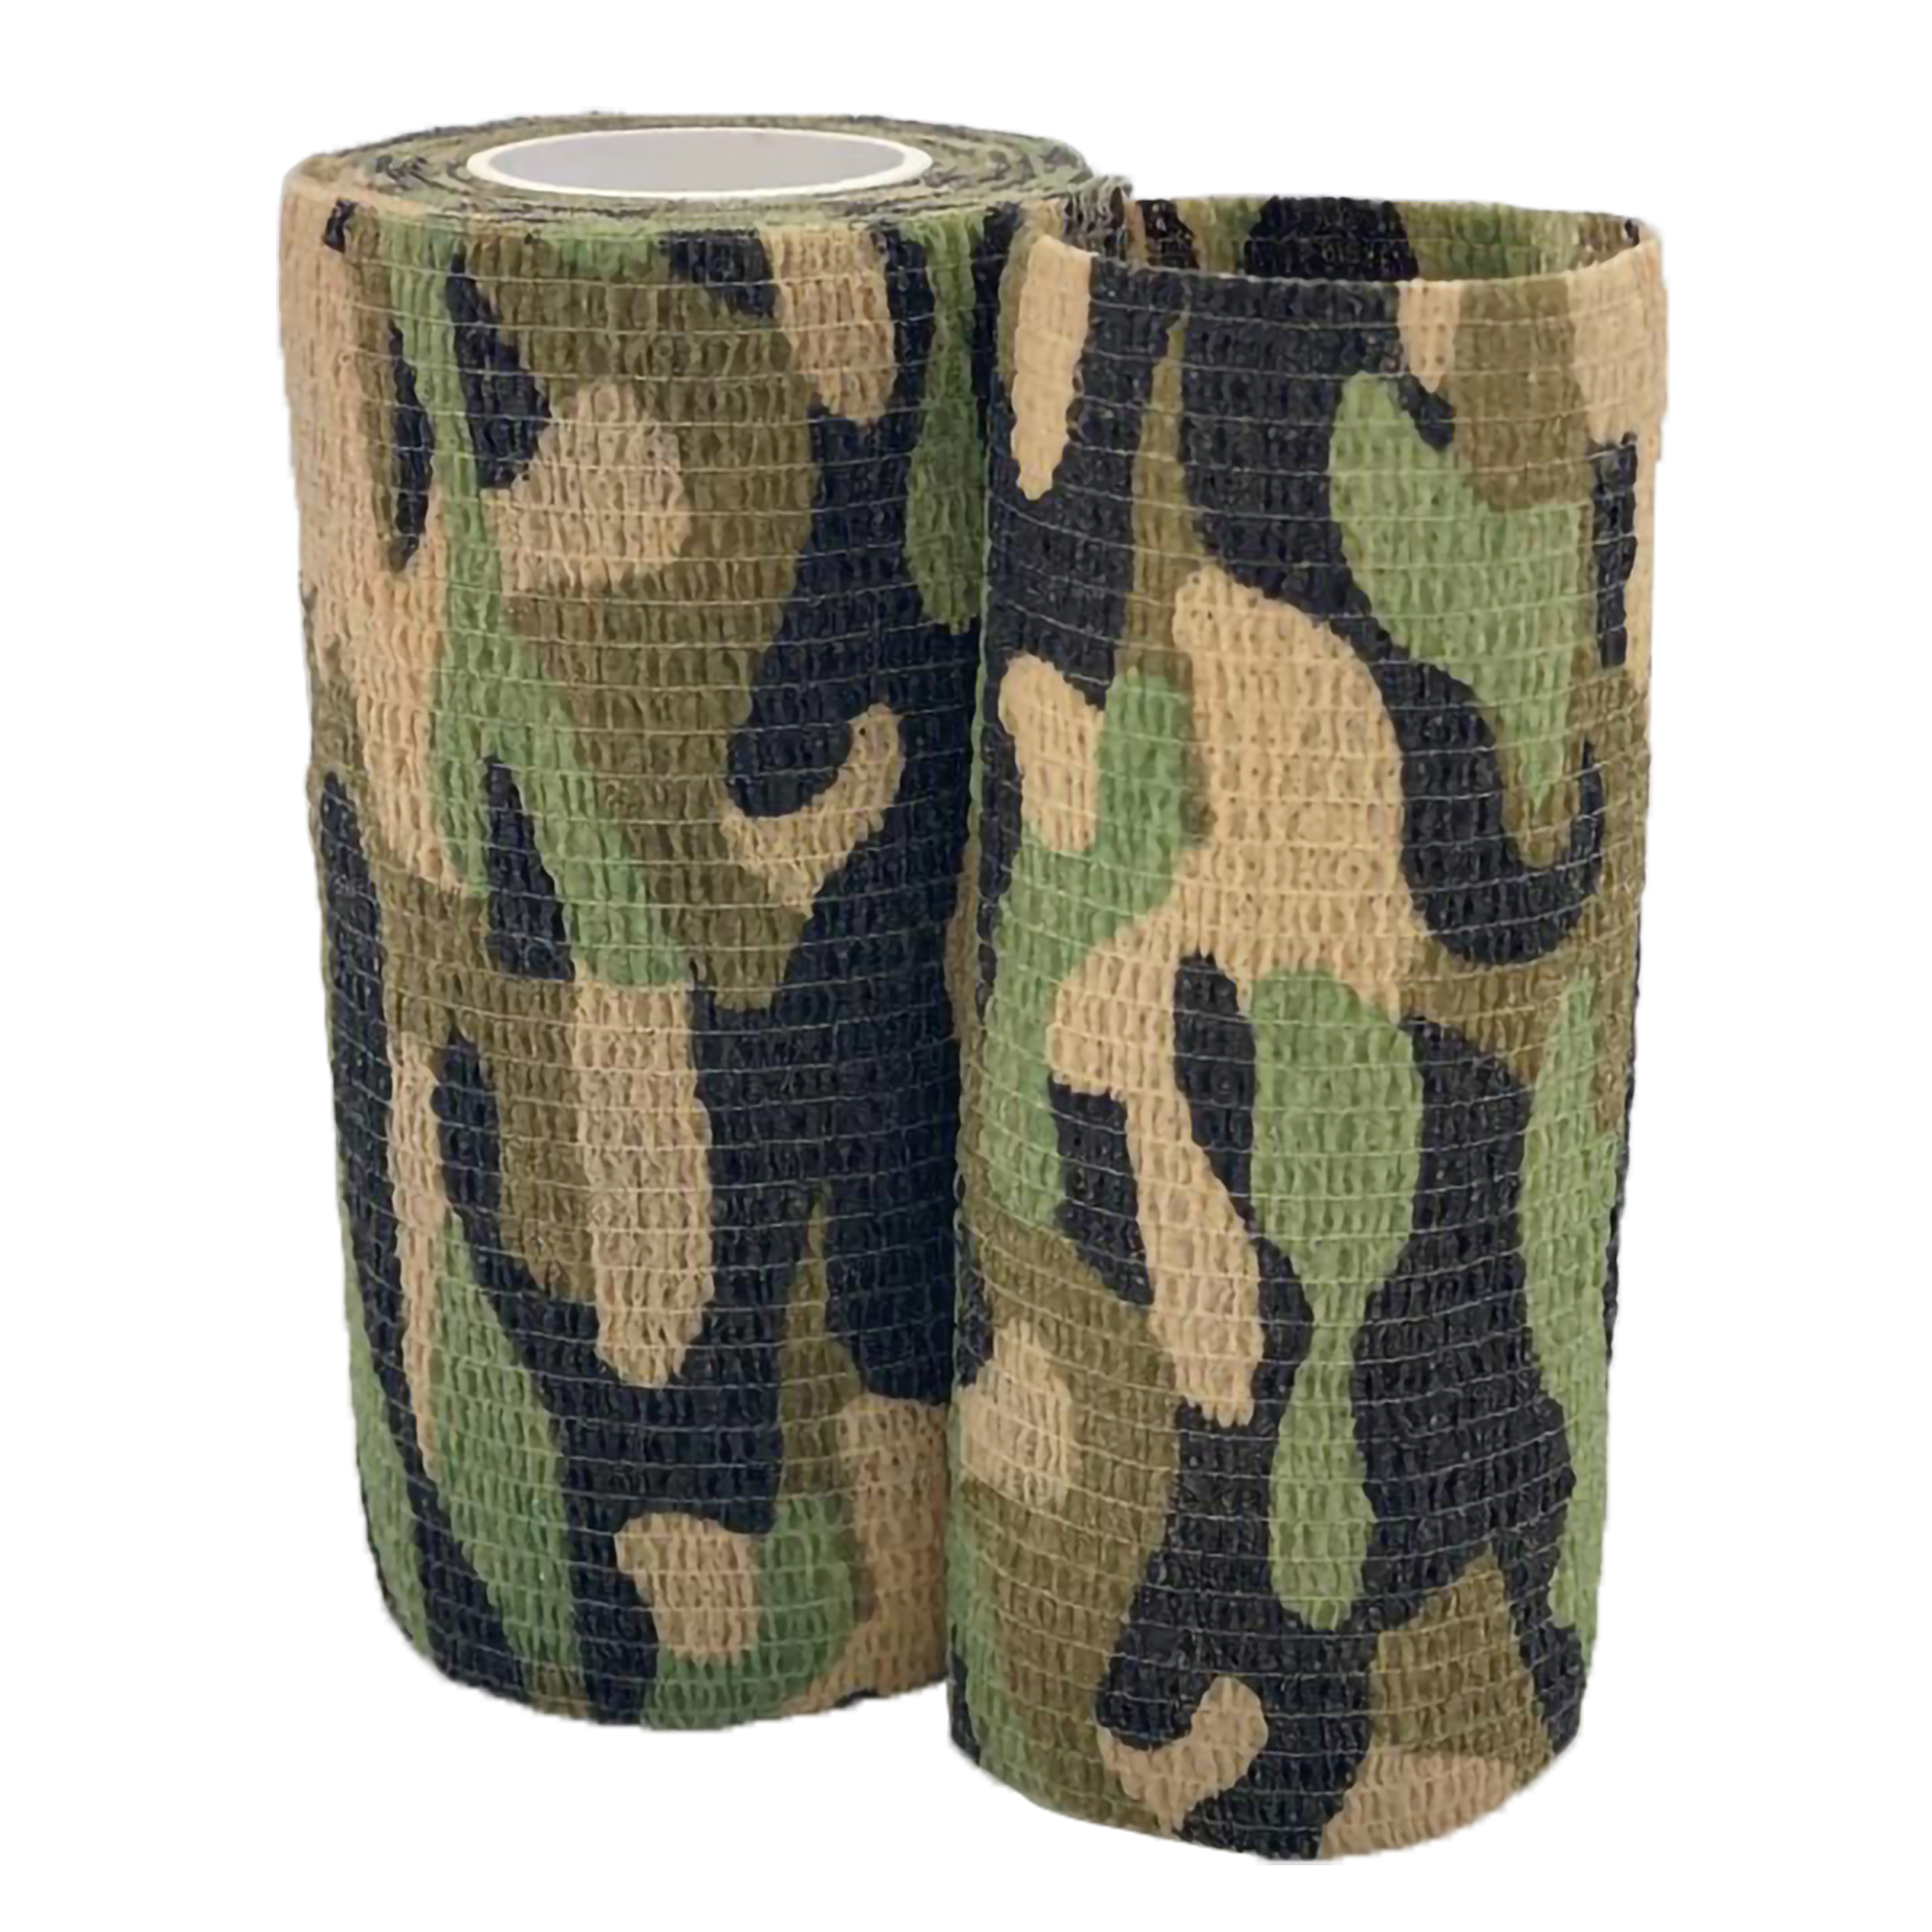 4” Cohesive Bandage, Camouflage Pattern